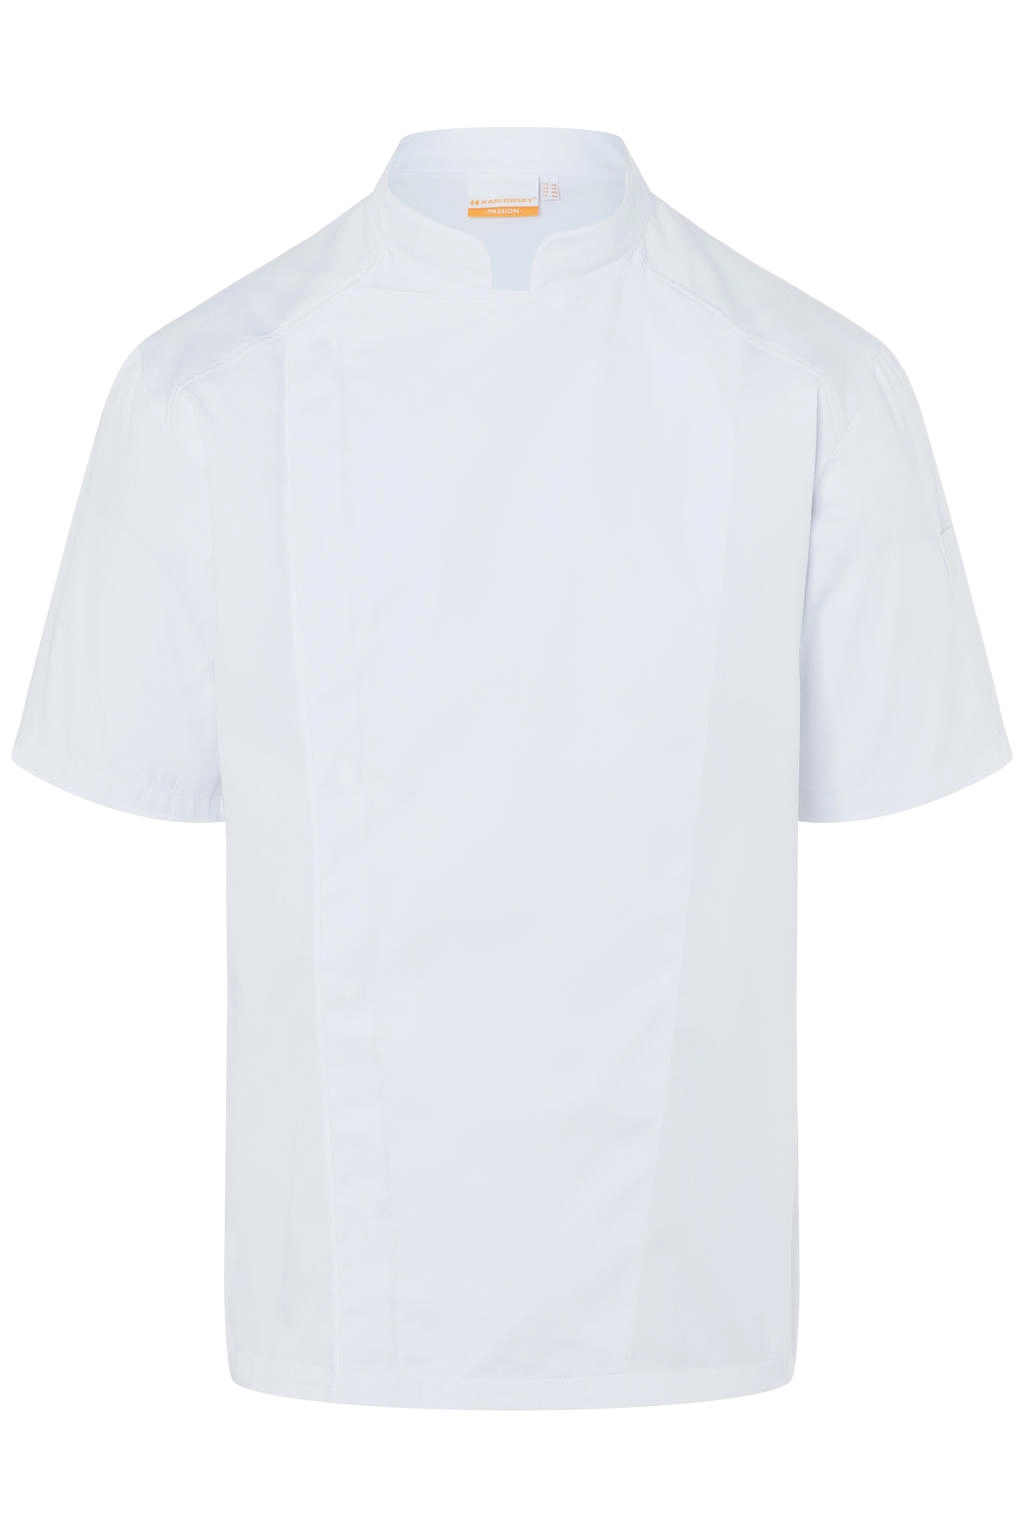 Short-Sleeve Chef Jacket Modern-Look zum Besticken und Bedrucken in der Farbe White mit Ihren Logo, Schriftzug oder Motiv.